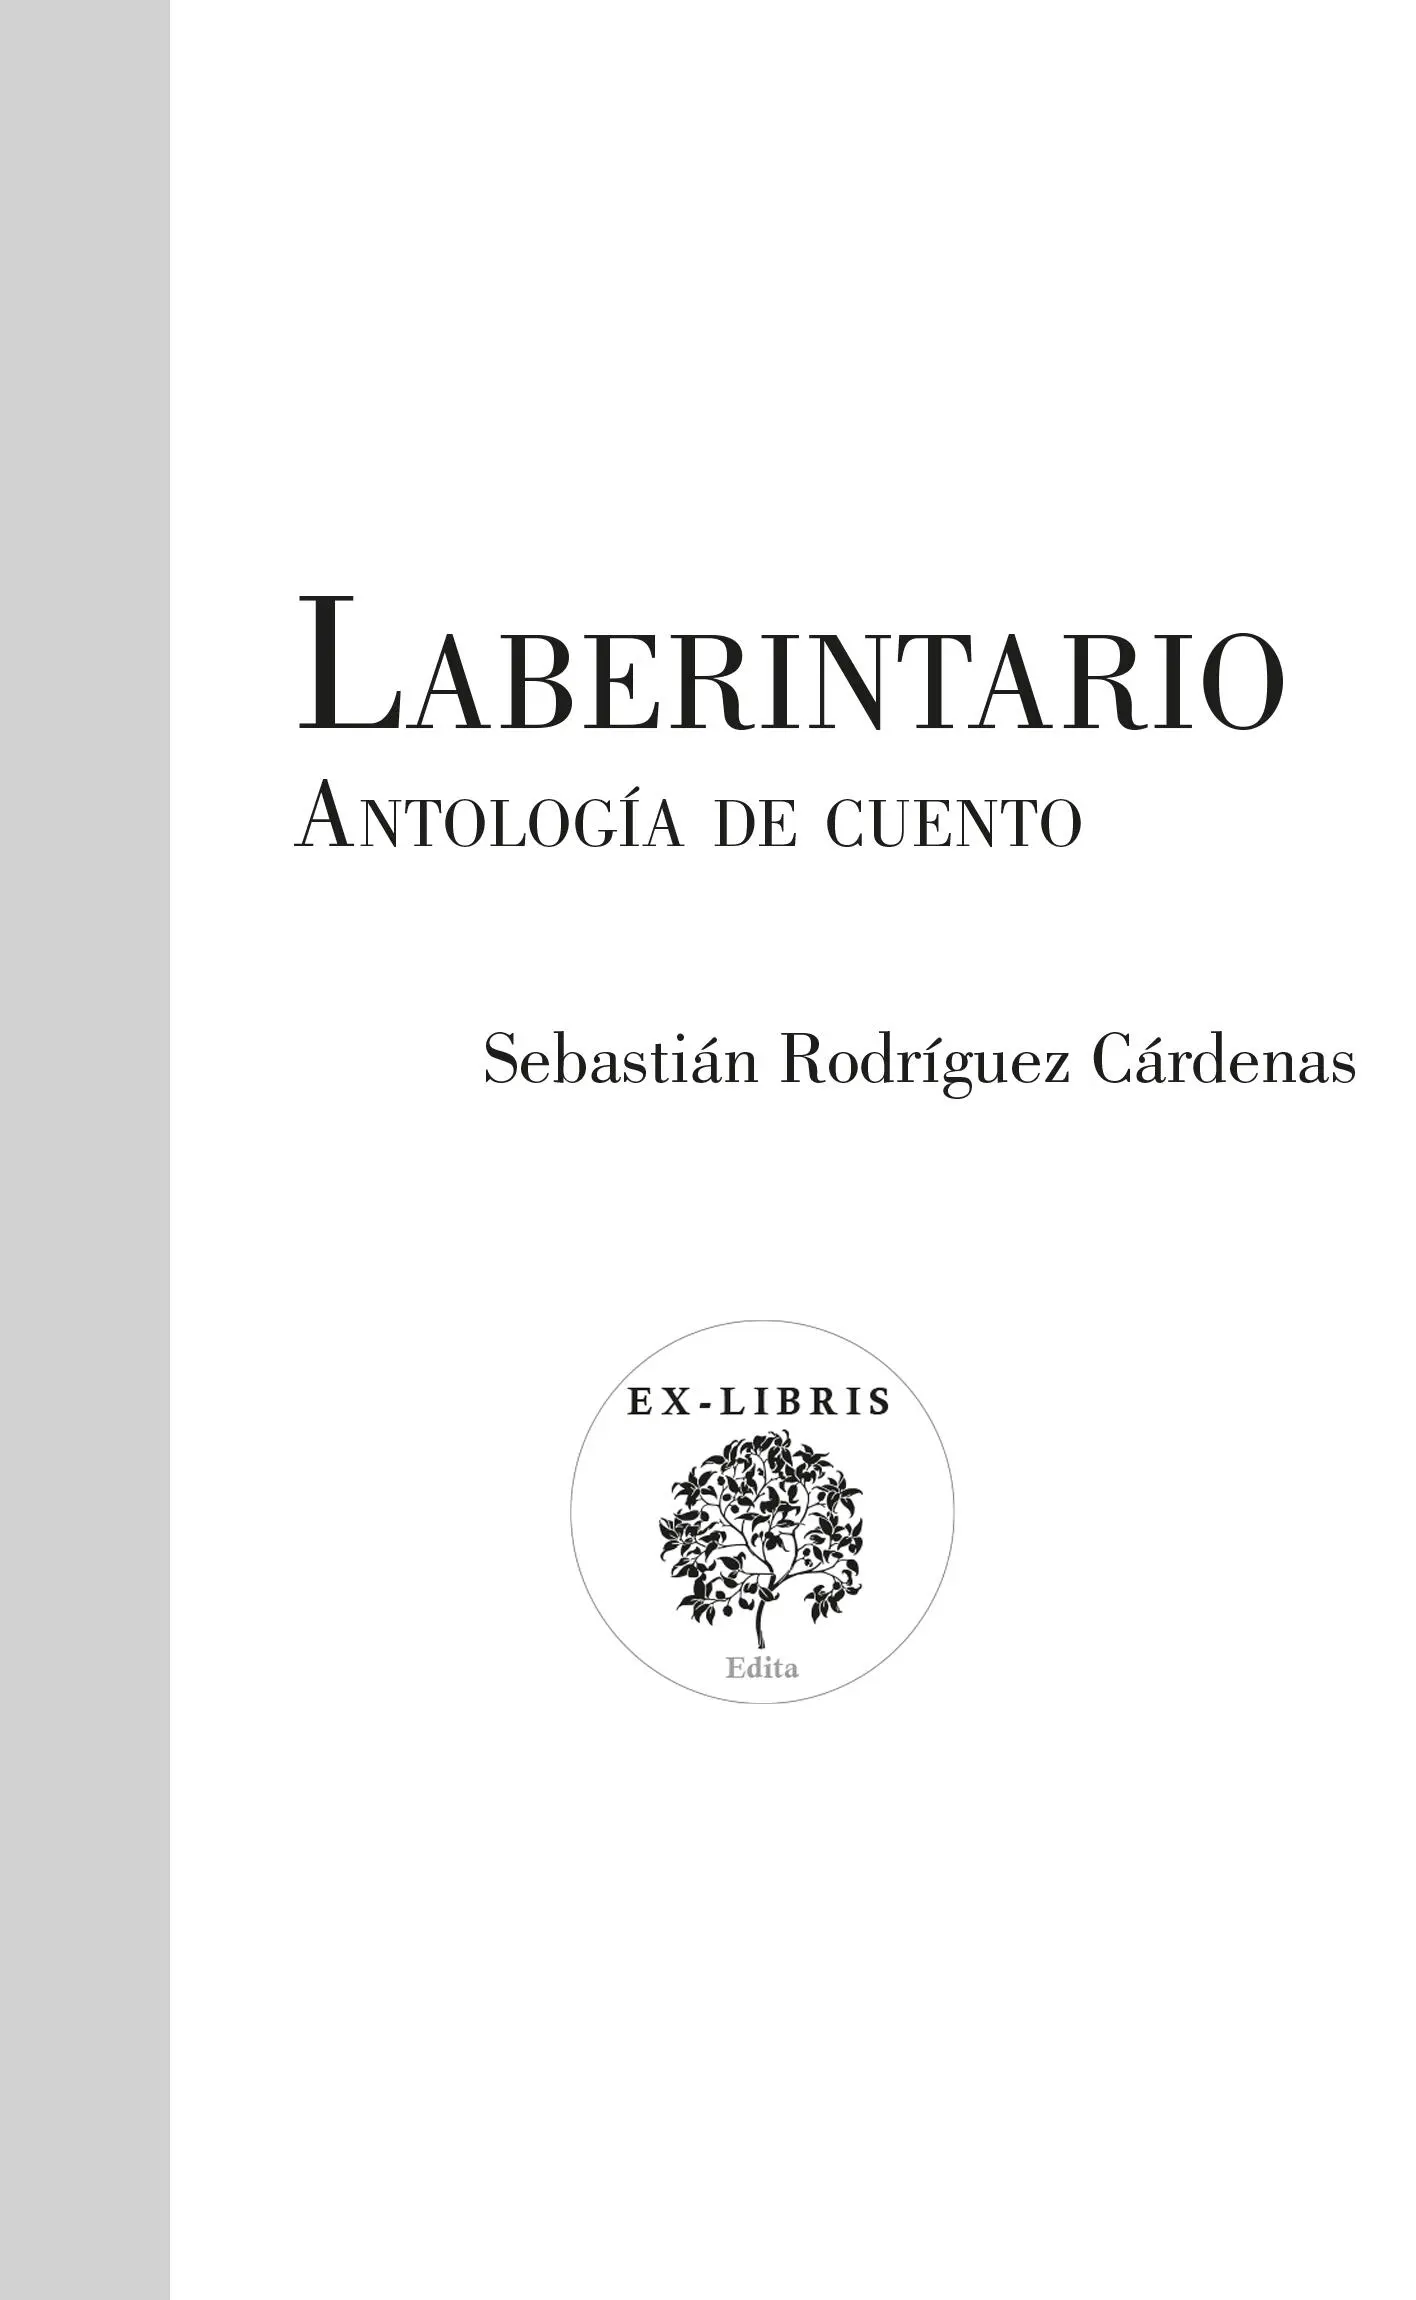 Rodríguez Cárdenas Sebastián Laberintario antología de cuento Sebastián - фото 1